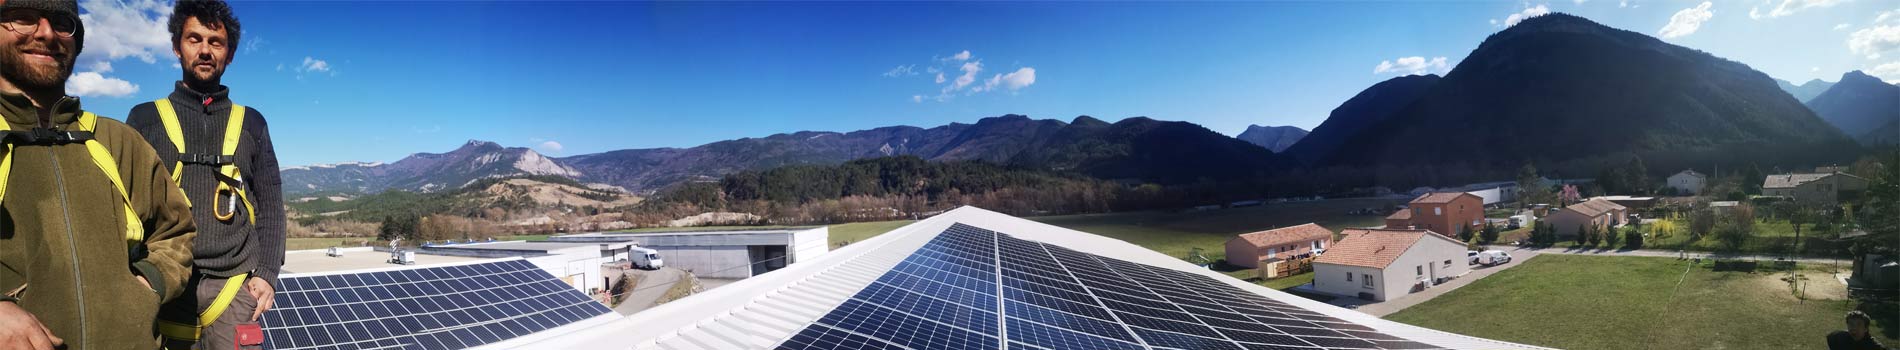 Slider 1 Hélioscop panneaux photovoltaïques Drome Ardèche